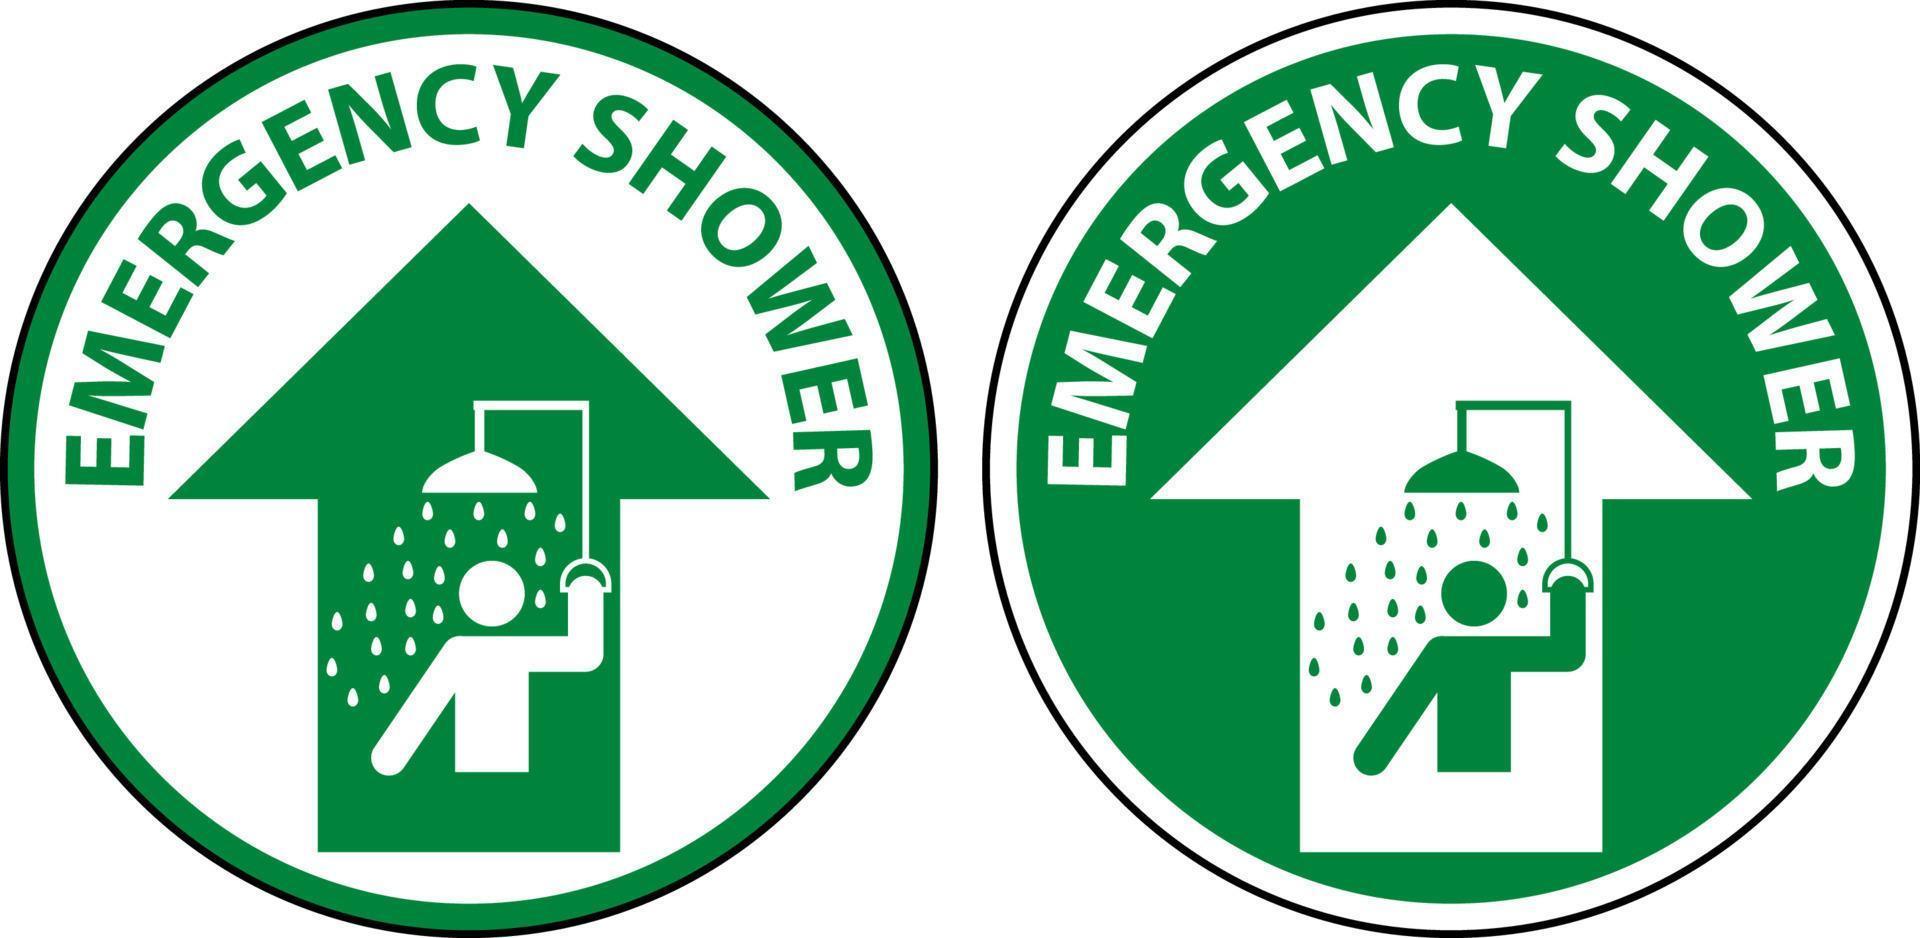 Emergency Shower Floor Sign On White Background vector